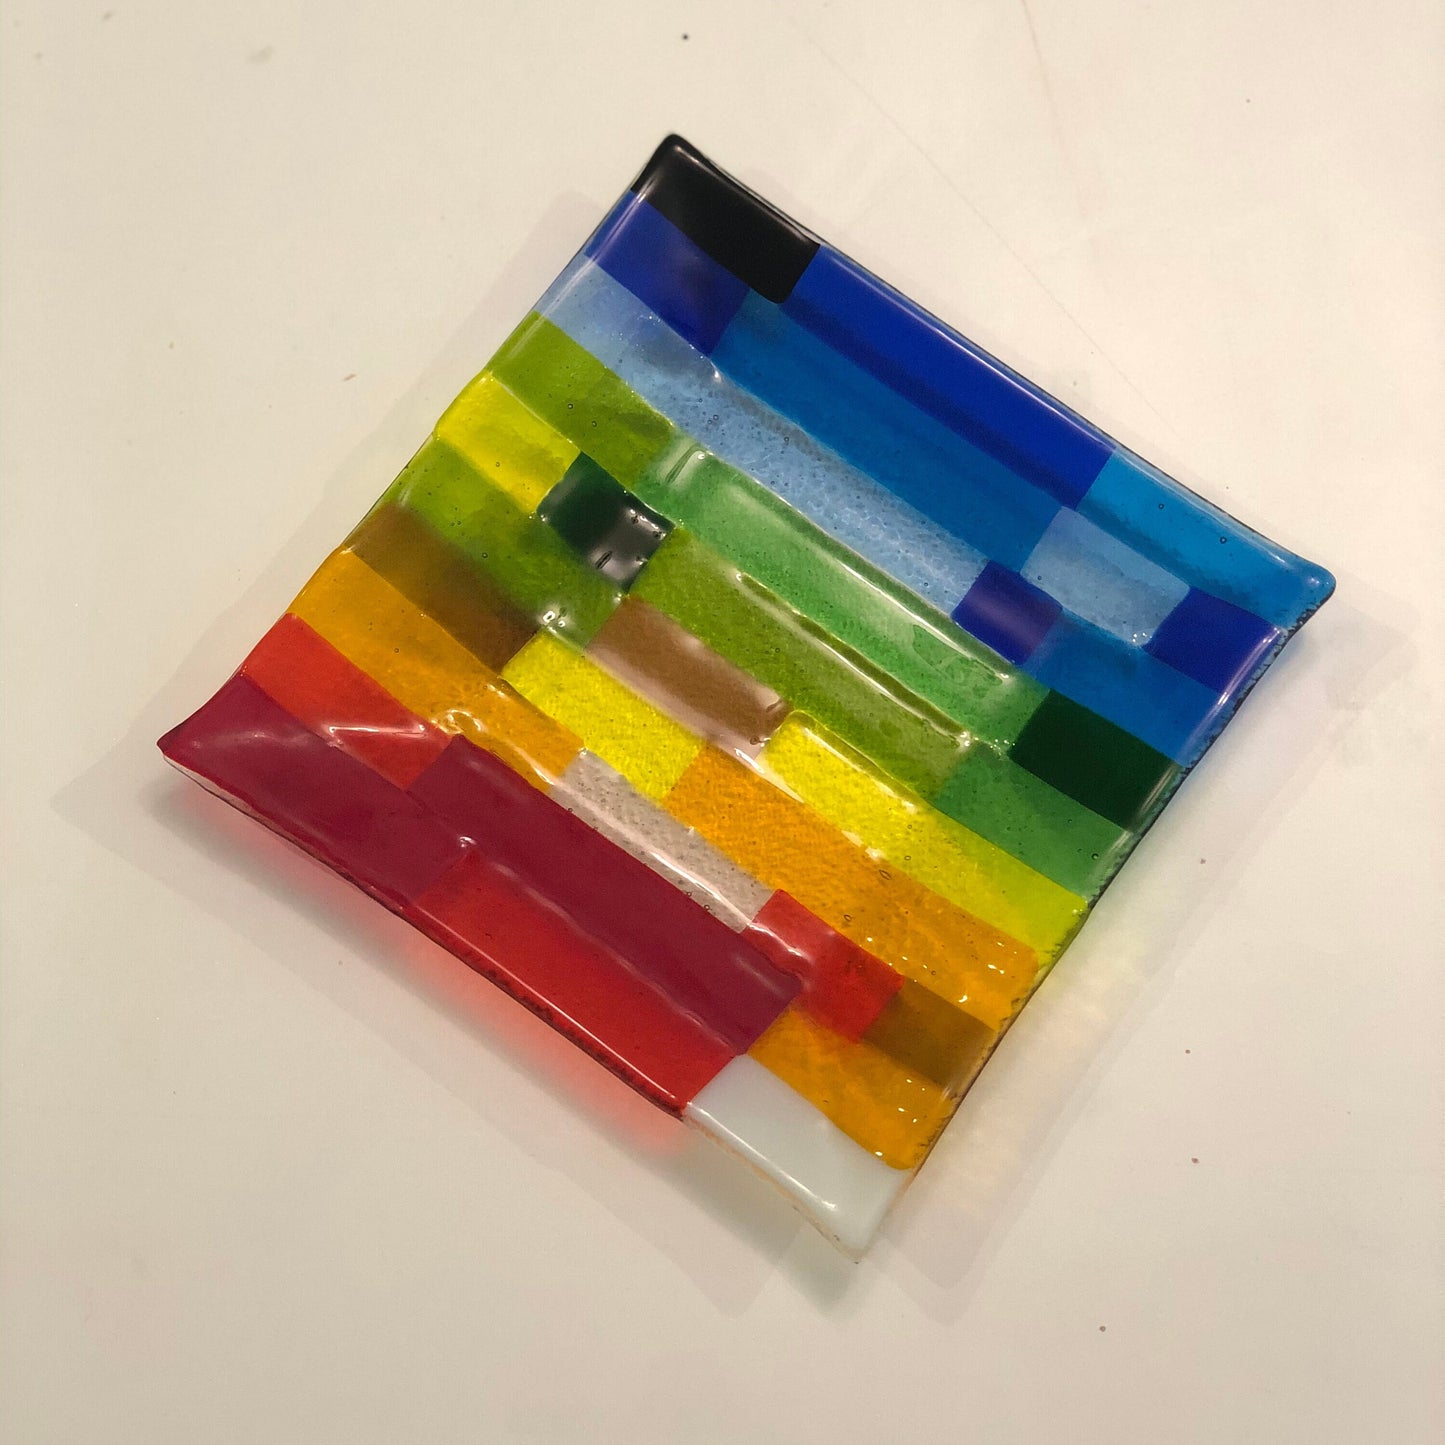 Placa de vidrio fundido, placa de colores arco iris moderna y hecha a mano, regalo único